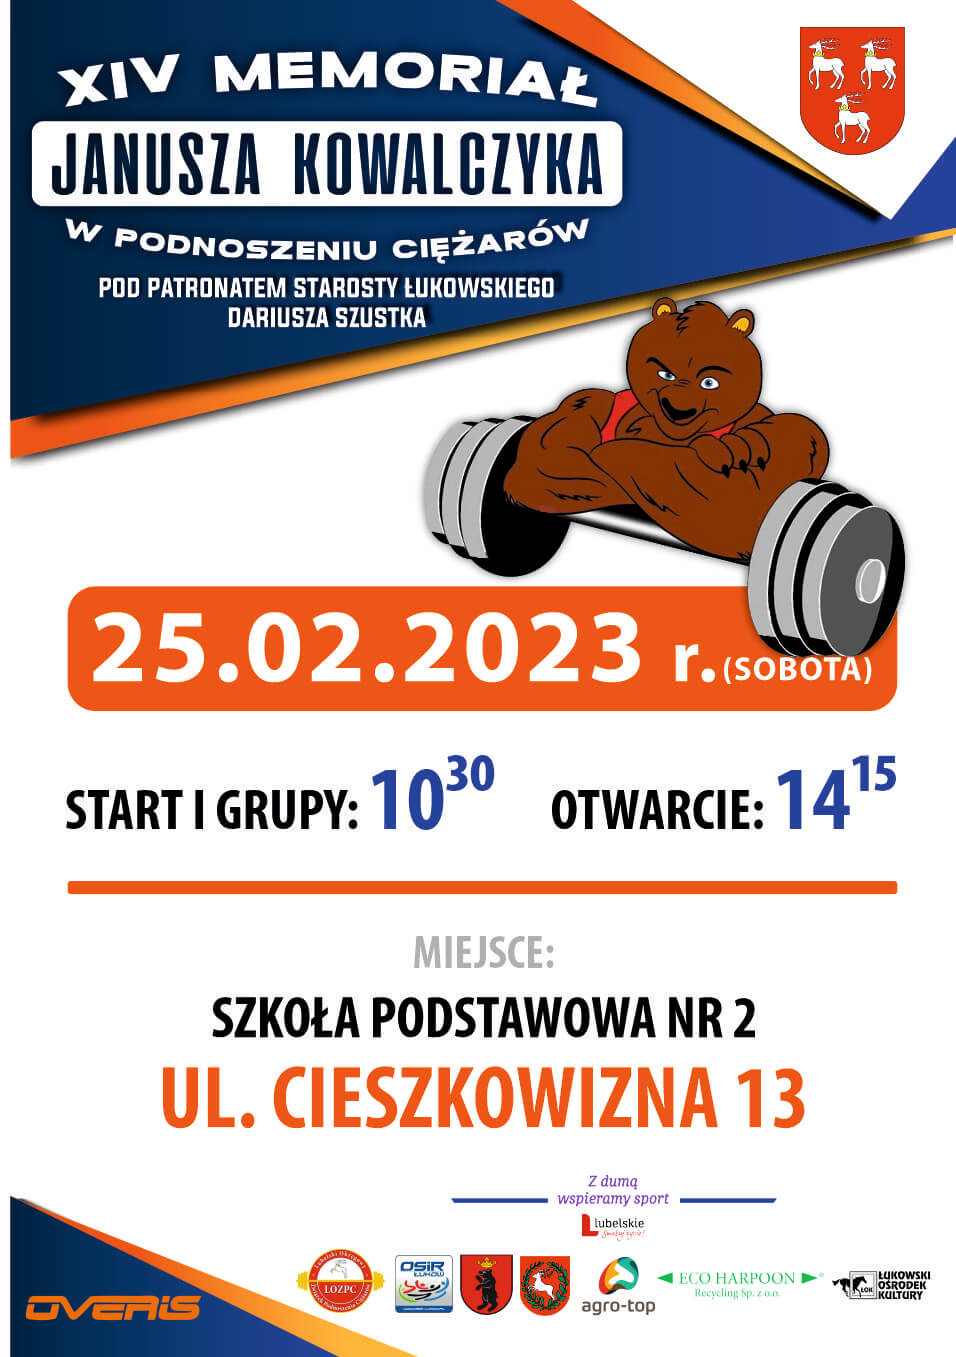 Plakat 15. Międzynarodowego Memoriału Janusza Kowalczyka w podnoszeniu ciężarów.